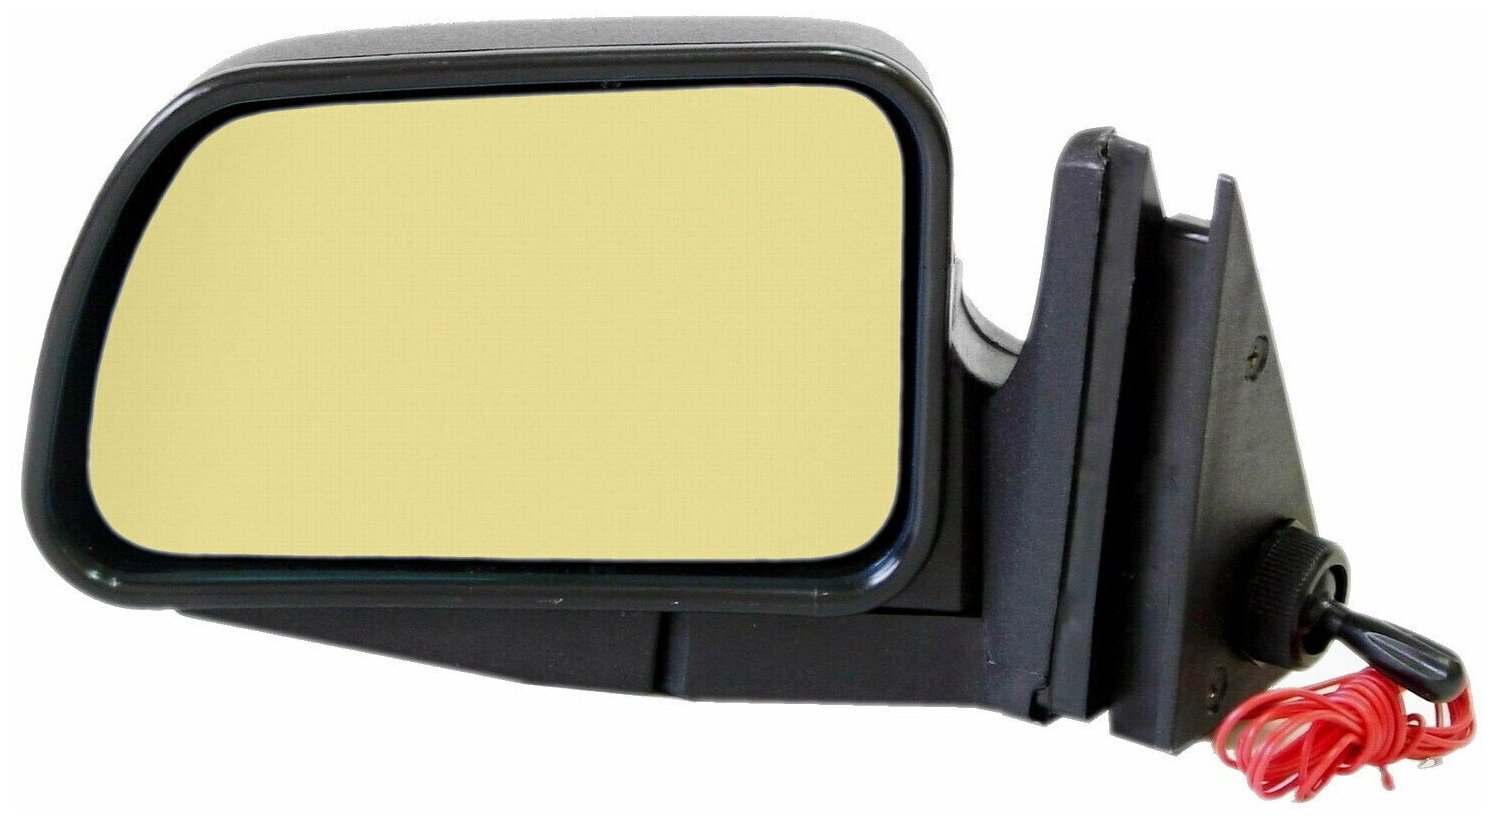 Зеркало боковое левое для ВАЗ-2104, 2105, 2107, модель Р-5 АО с тросовым приводом регулировки, с плоским противоослепляющим отражателем золотистогоо тона, с системой обогрева.